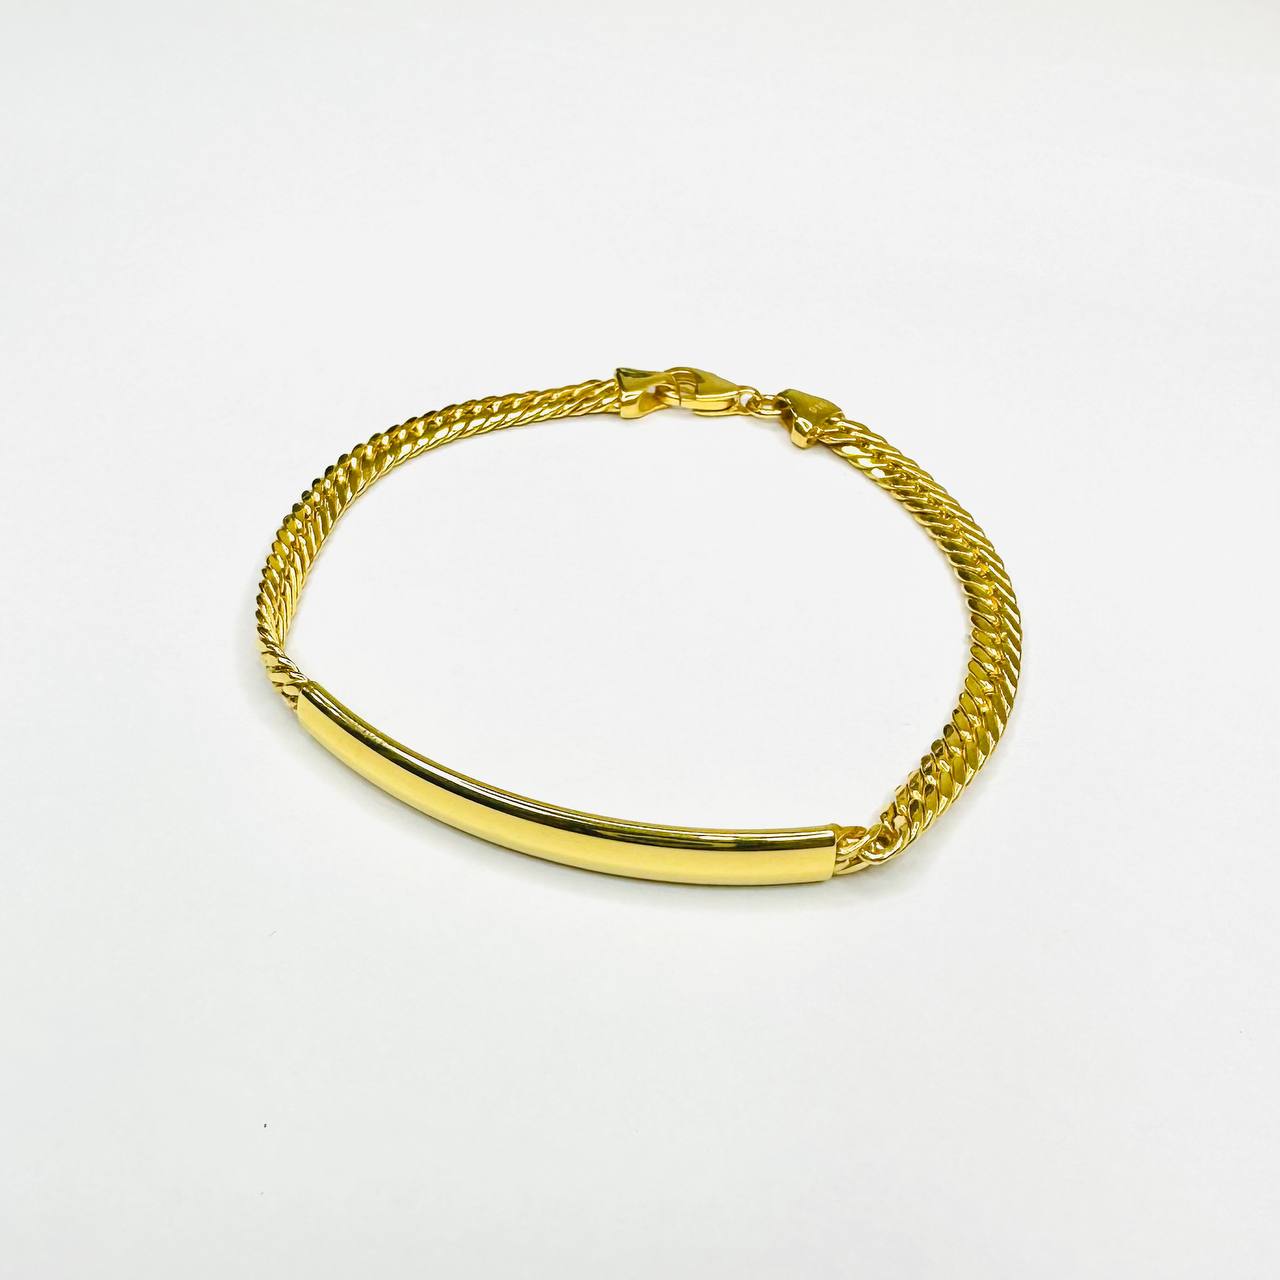 22k / 916 Gold Cowboy Name Bar Bracelet-916 gold-Best Gold Shop